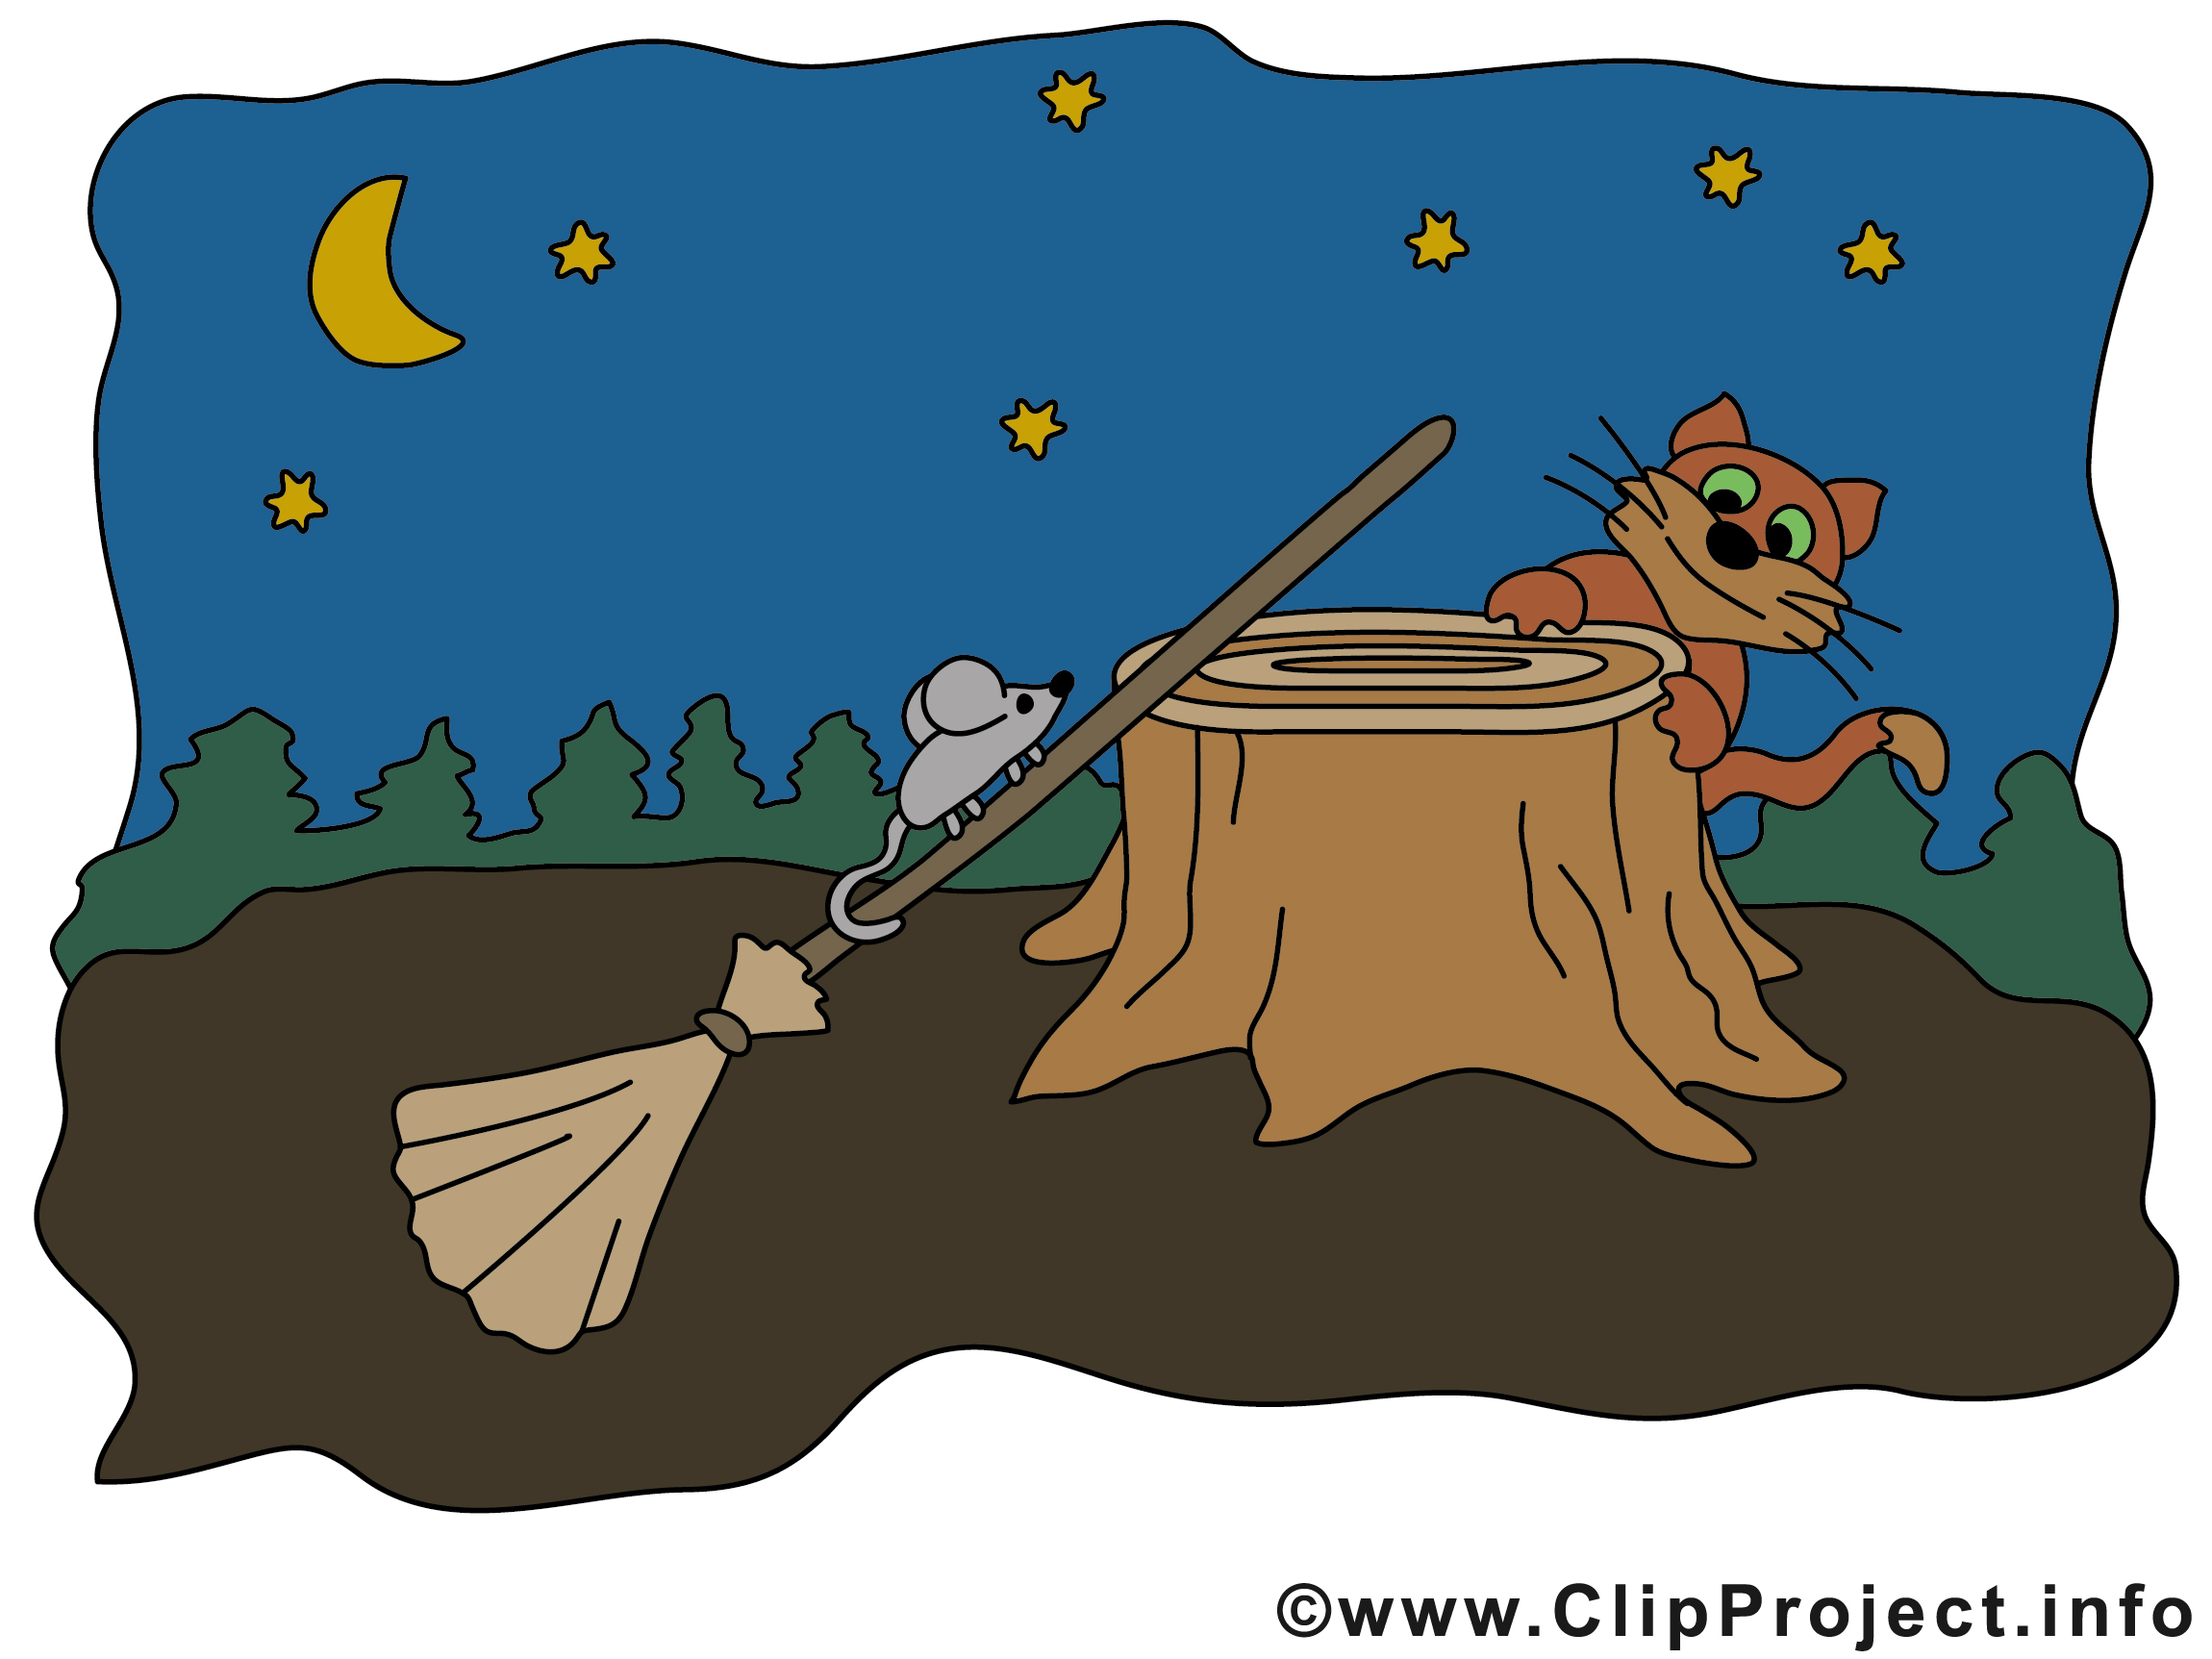 Drôle halloween clipart gratuit images - Halloween dessin, picture, image, graphic, clip art ...